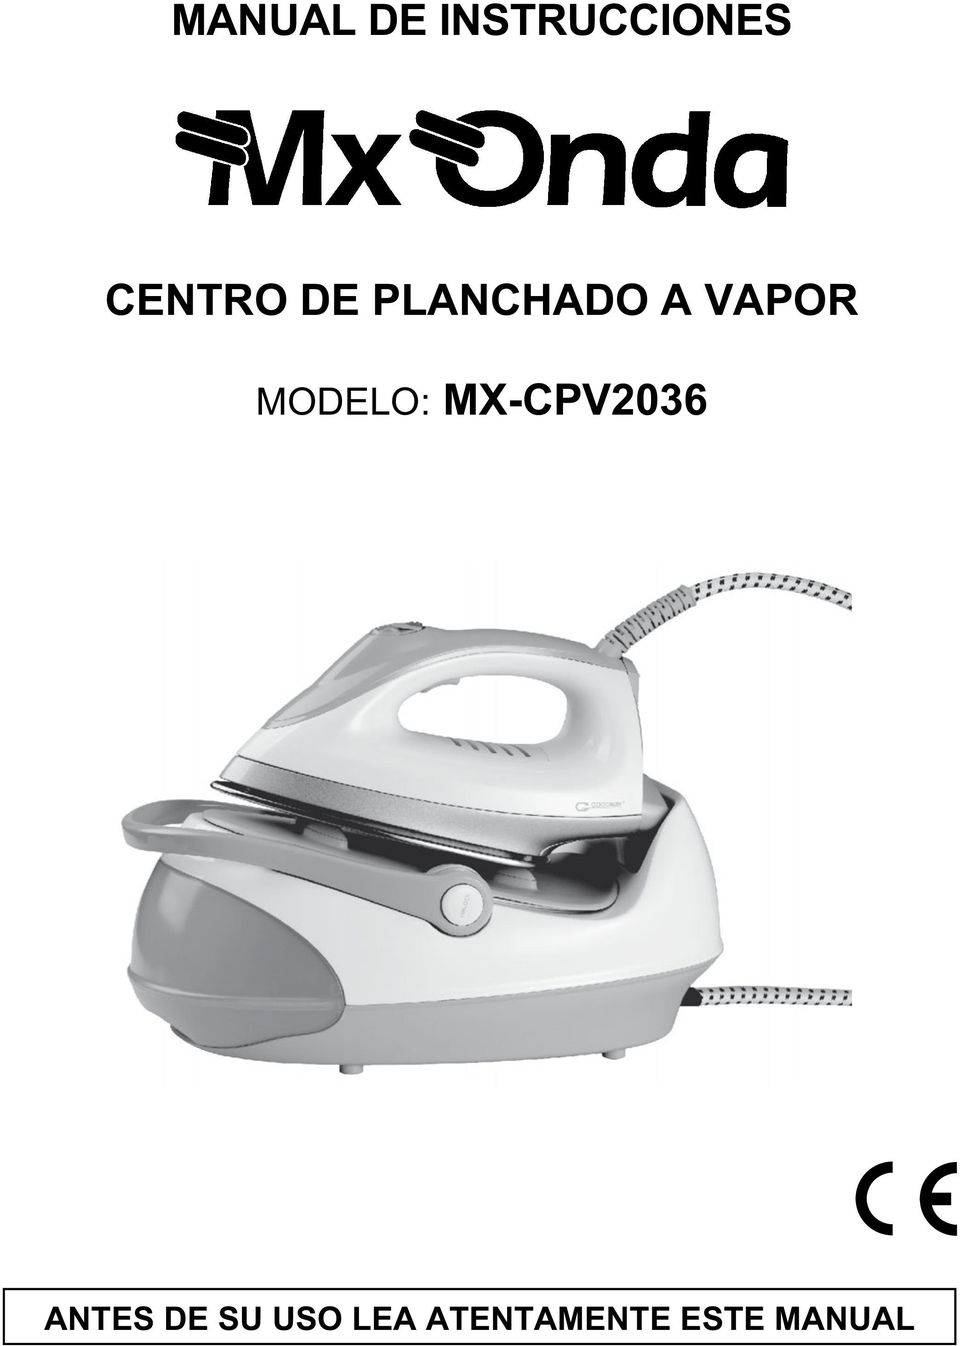 MODELO: MX-CPV2036 ANTES DE